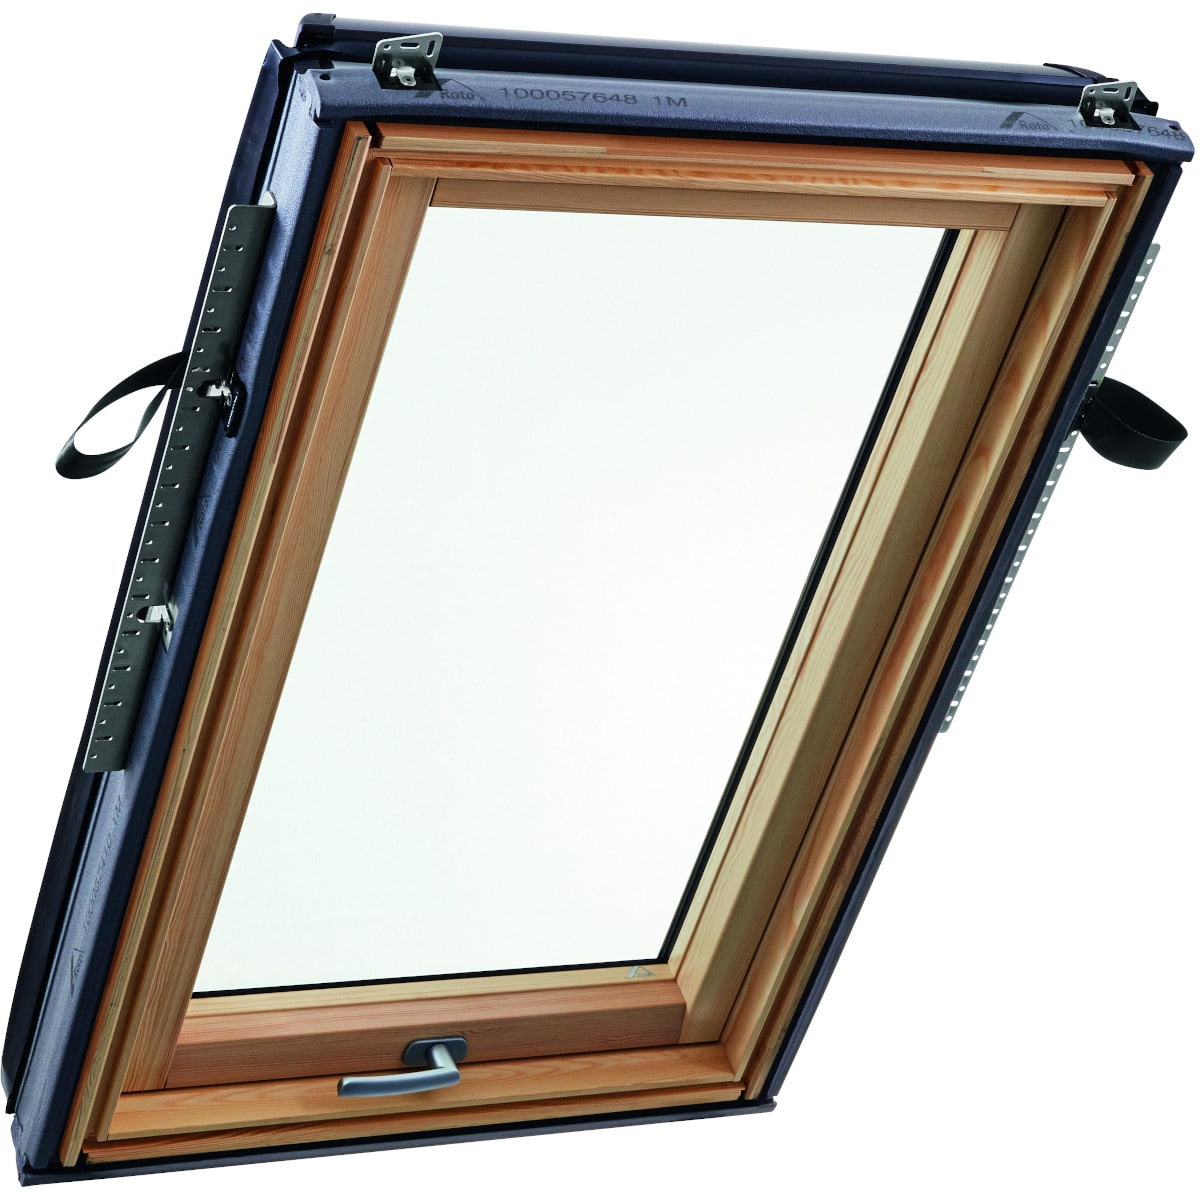 Окно мансардное деревянное с нижней ручкой Roto R88G H200. 1 камерный стеклопакет. ThermoBlock WD.